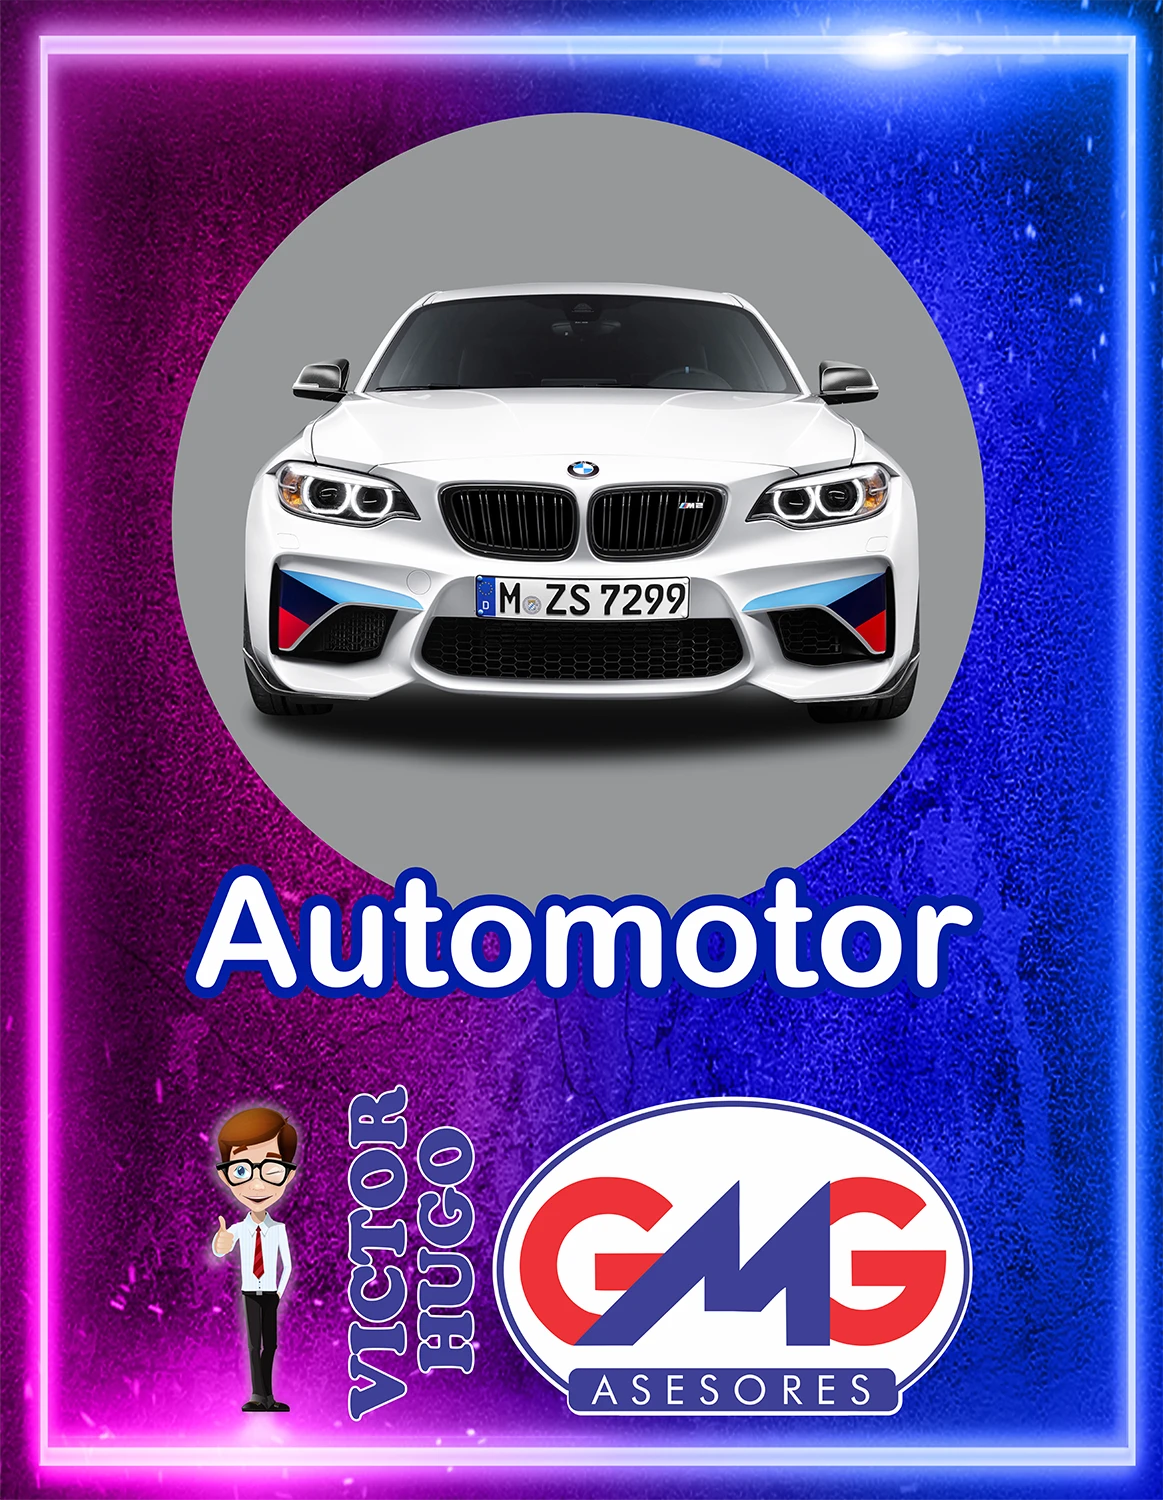 Seguros del Automotor - GMG Asesores